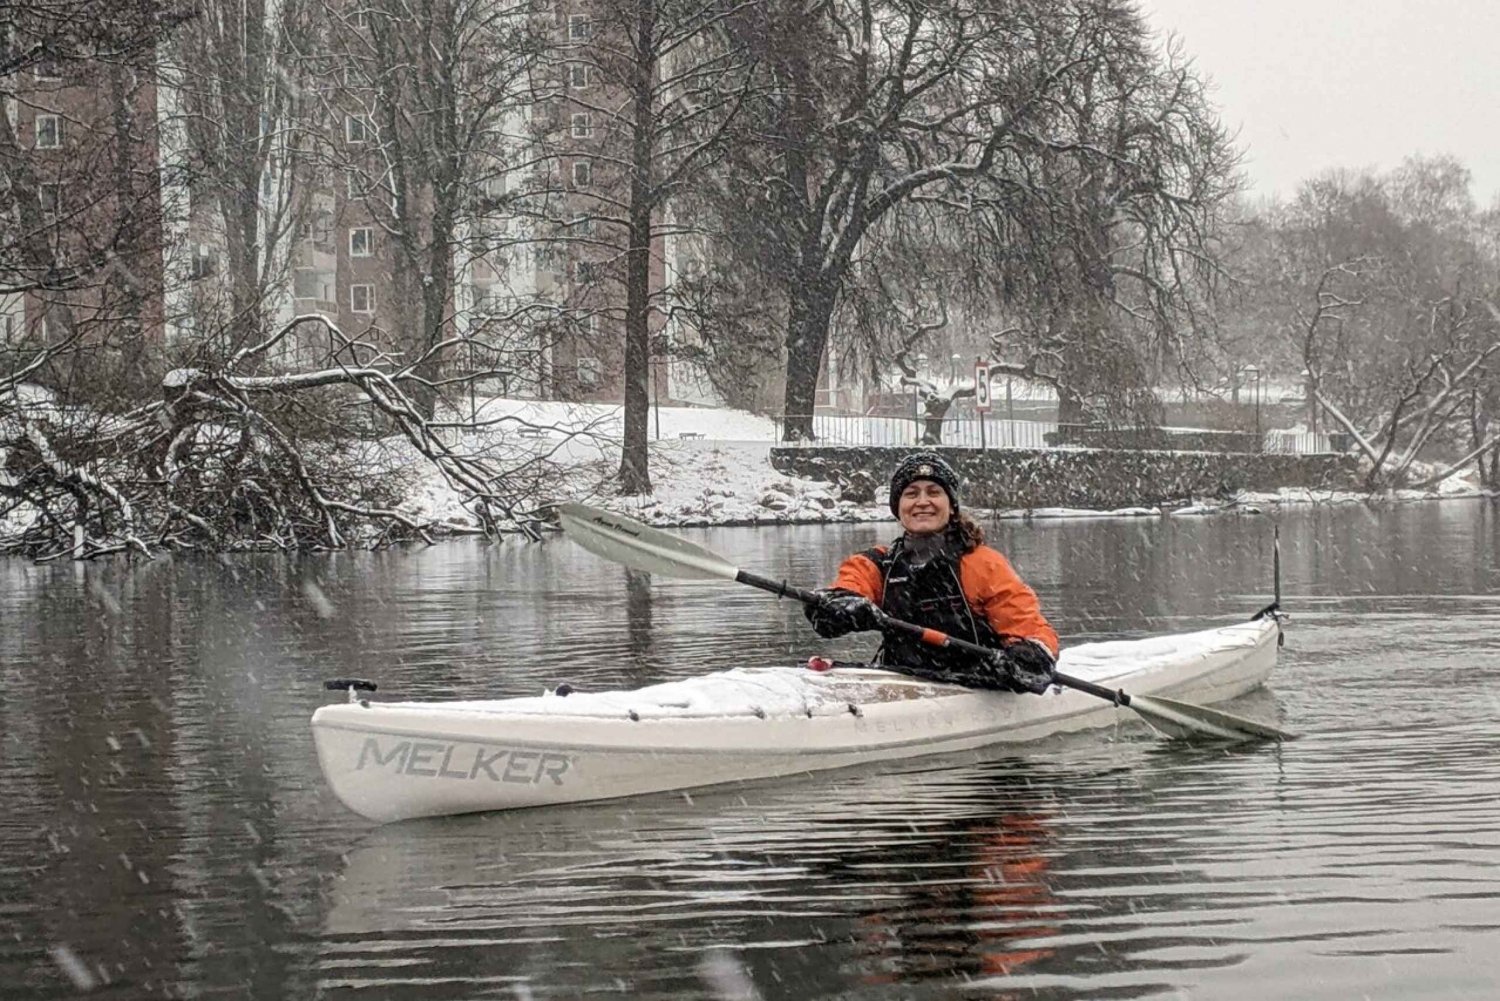 Sztokholm: Zimowy spływ kajakowy z opcjonalną sauną